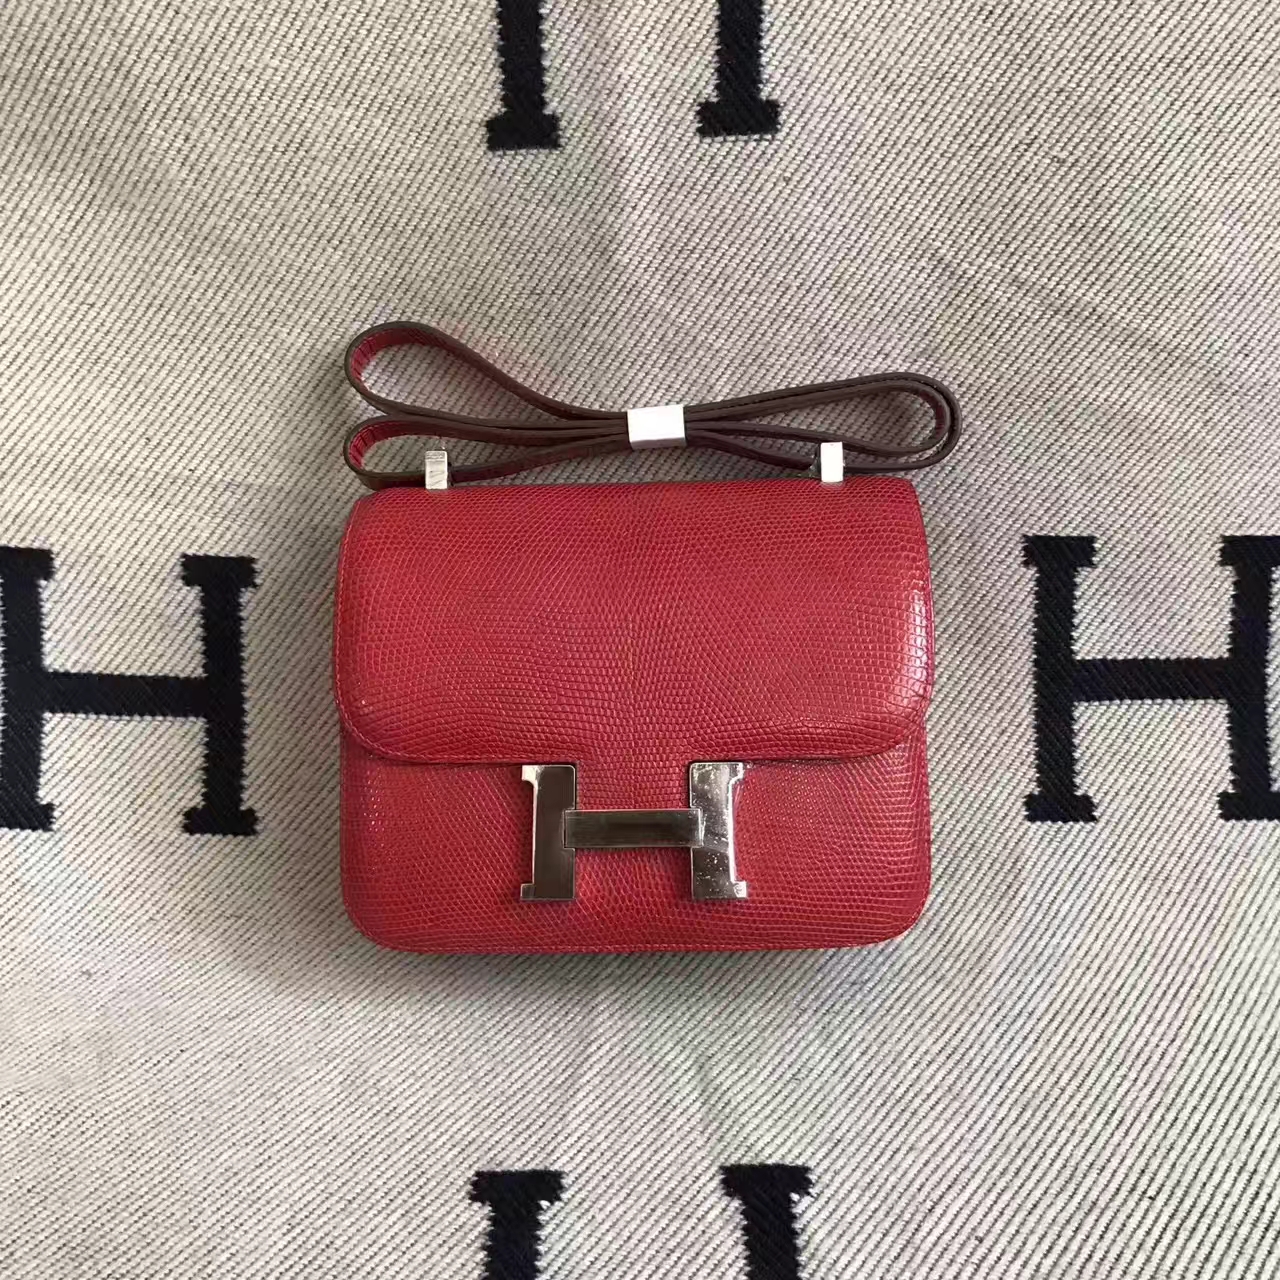 Wholesale Hermes Q5 Rouge Casaque Shiny Lizard Leather Constance Bag 24cm